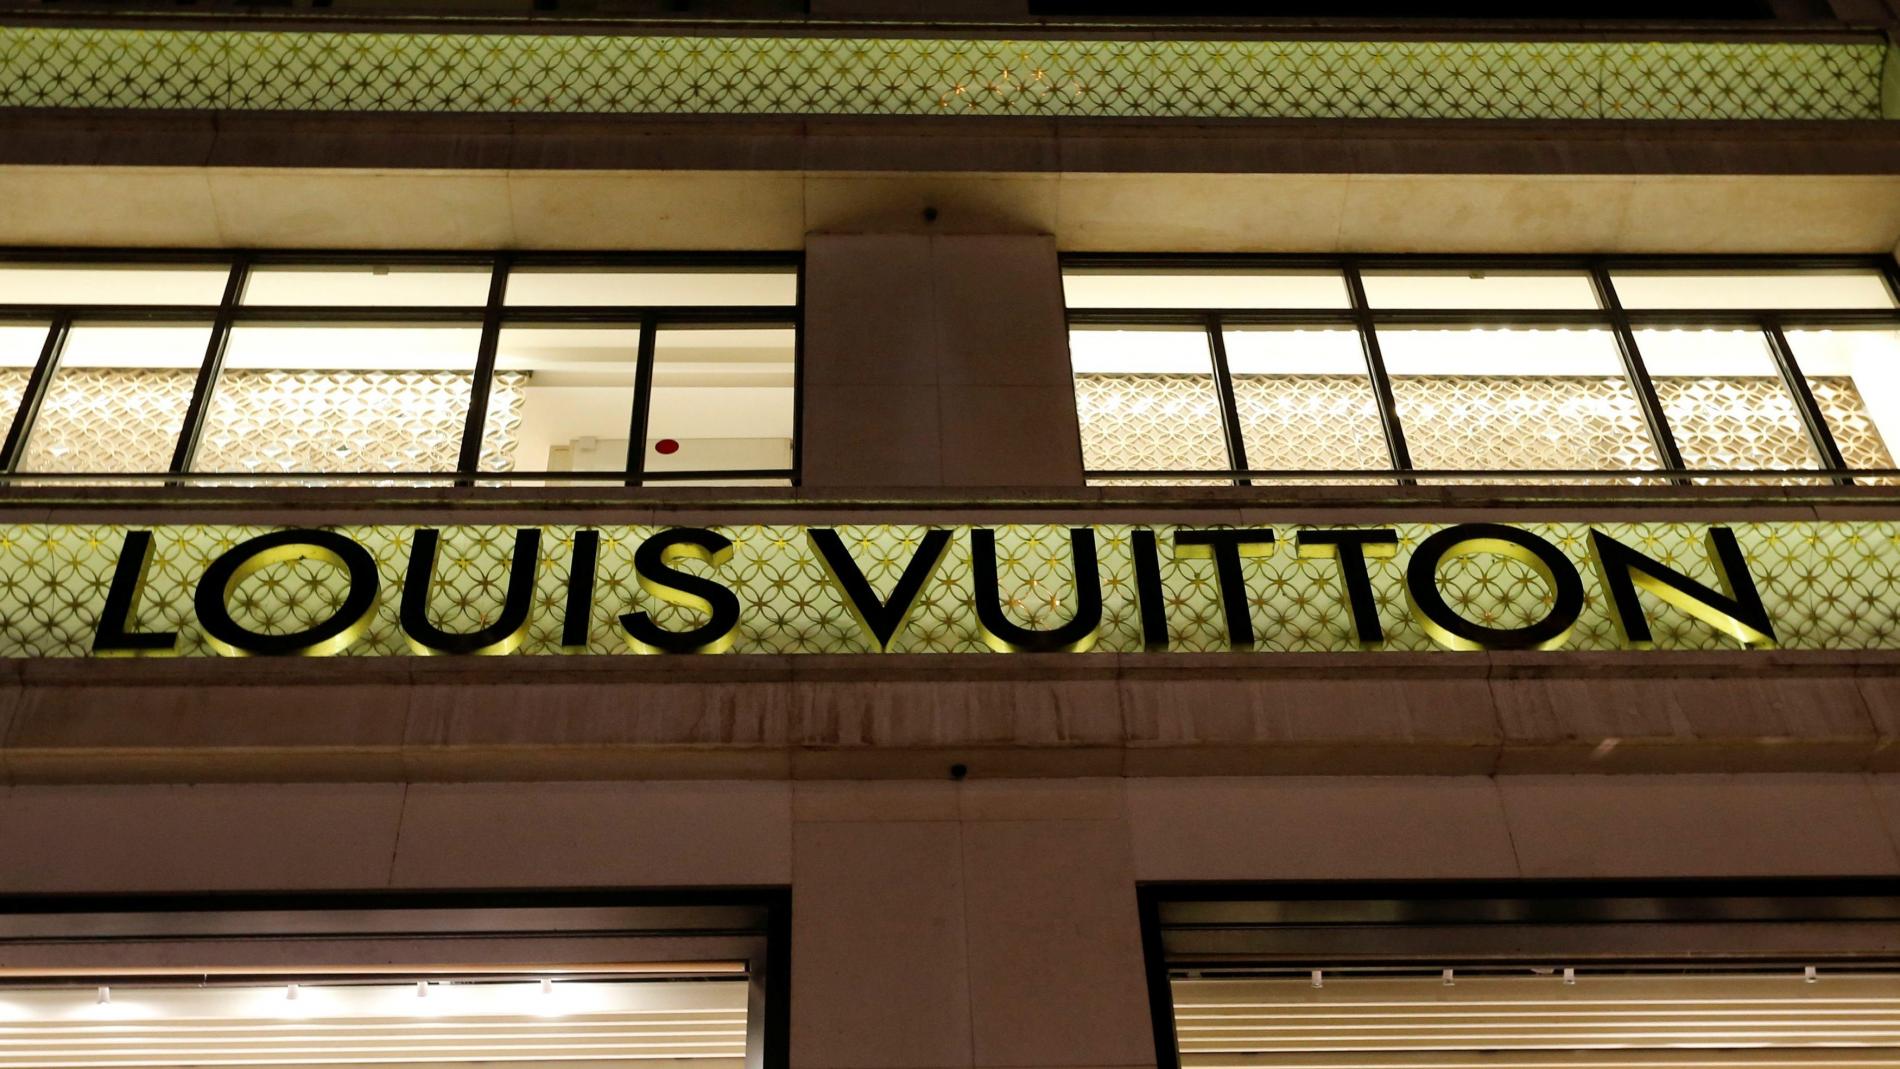 Louis Vuitton prefiere a los consumidores chinos que a los nacionales